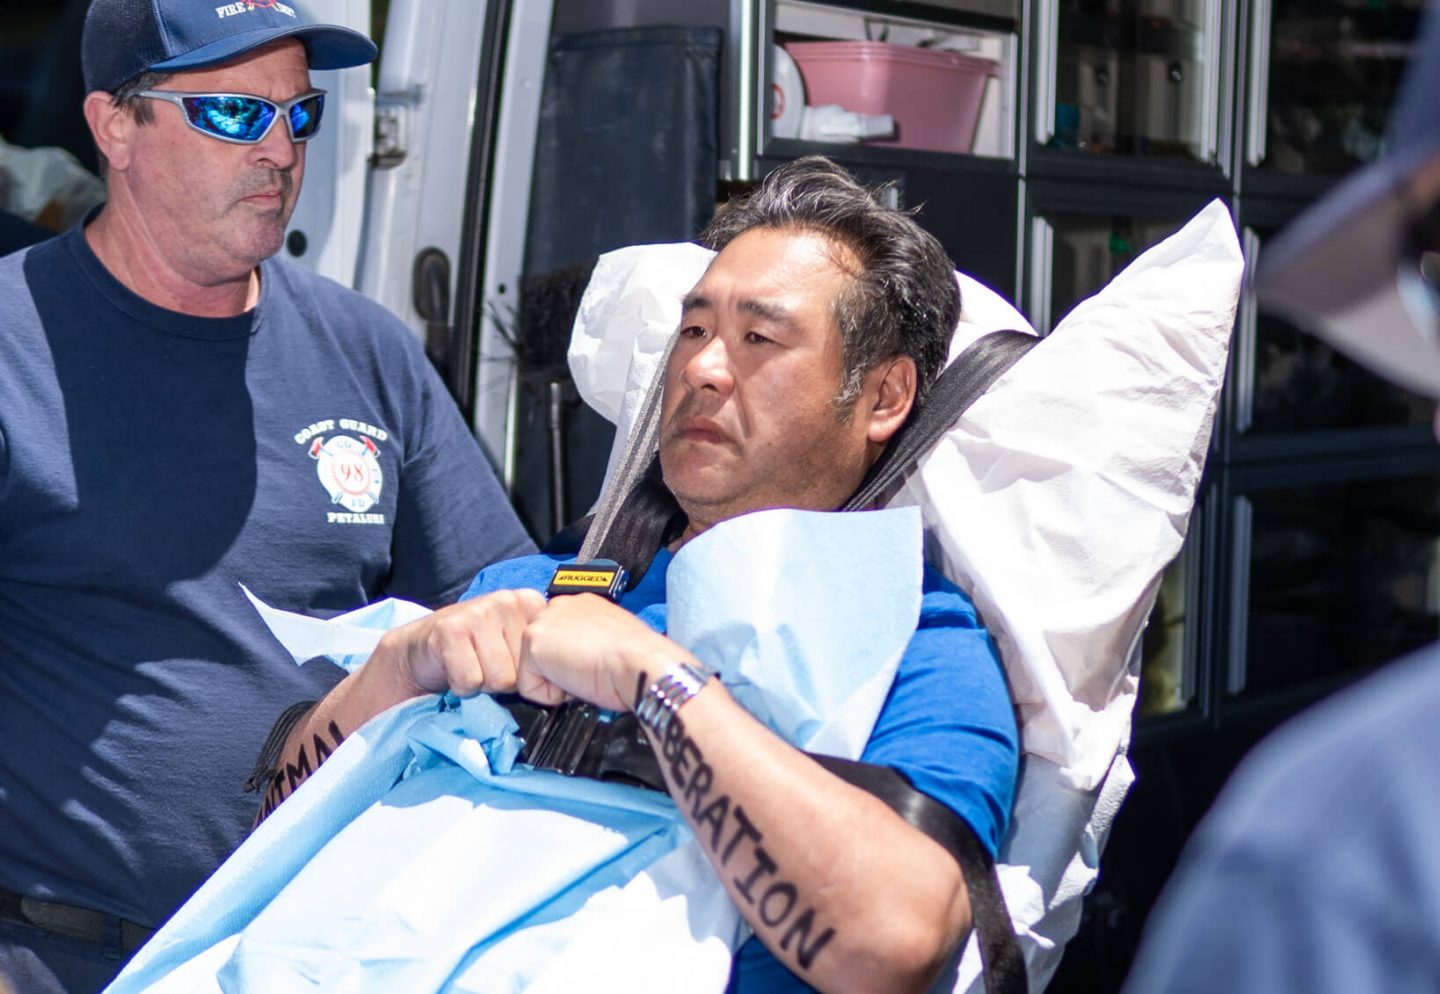 Chiang ambulance injury